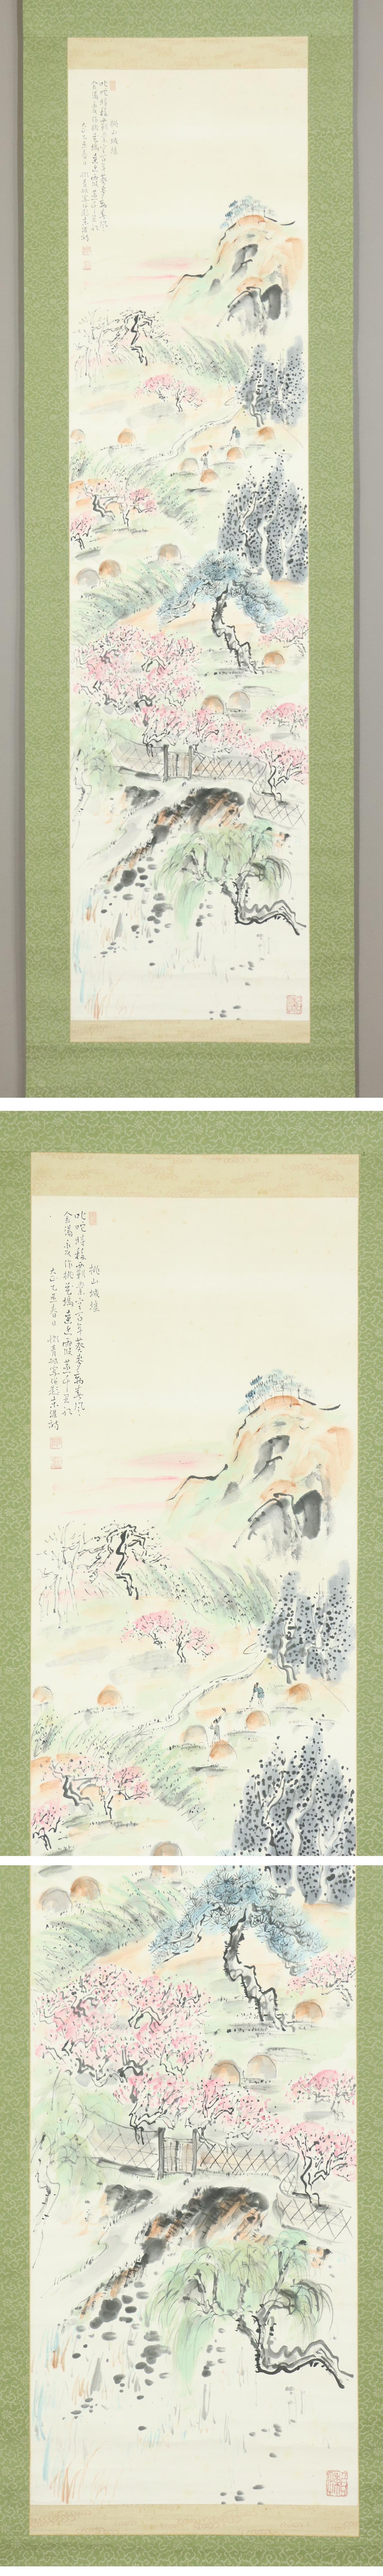 ご購入◆津田青楓◆桃山城墟◆大正14年◆京都◆日本画◆洋画家◆肉筆◆紙本◆掛軸◆m614 山水、風月